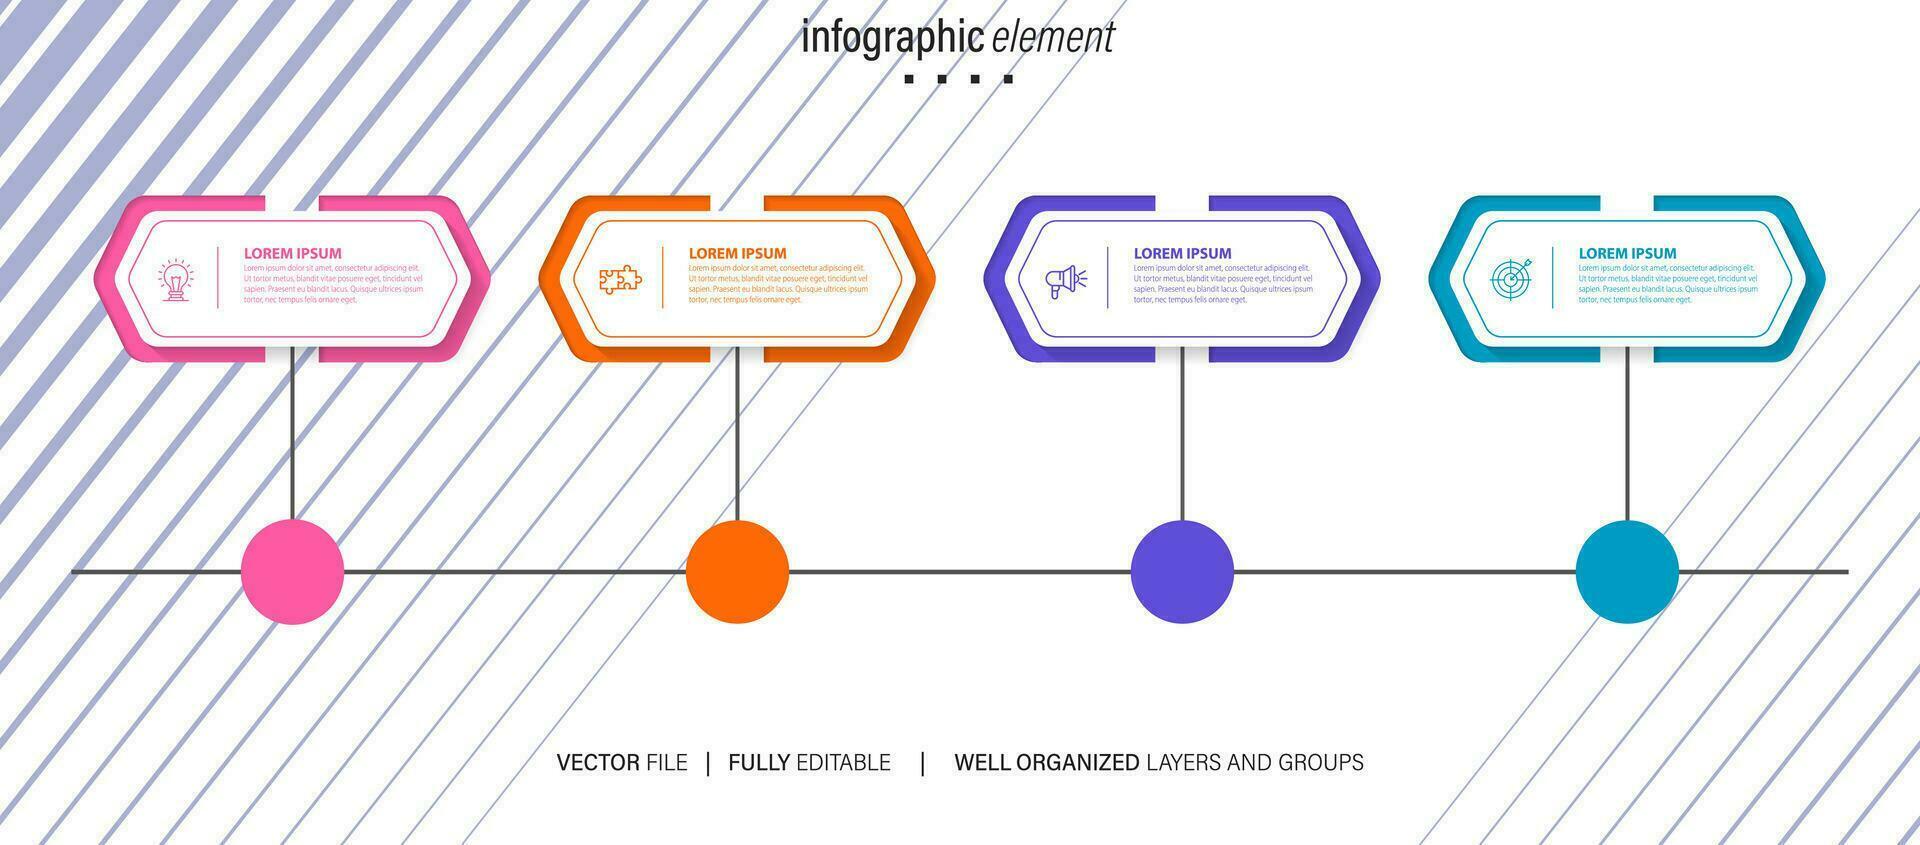 business road map timeline infographic icone progettate per sfondo astratto modello pietra miliare elemento moderno diagramma tecnologia di processo marketing digitale dati presentazione grafico illustrazione vettoriale